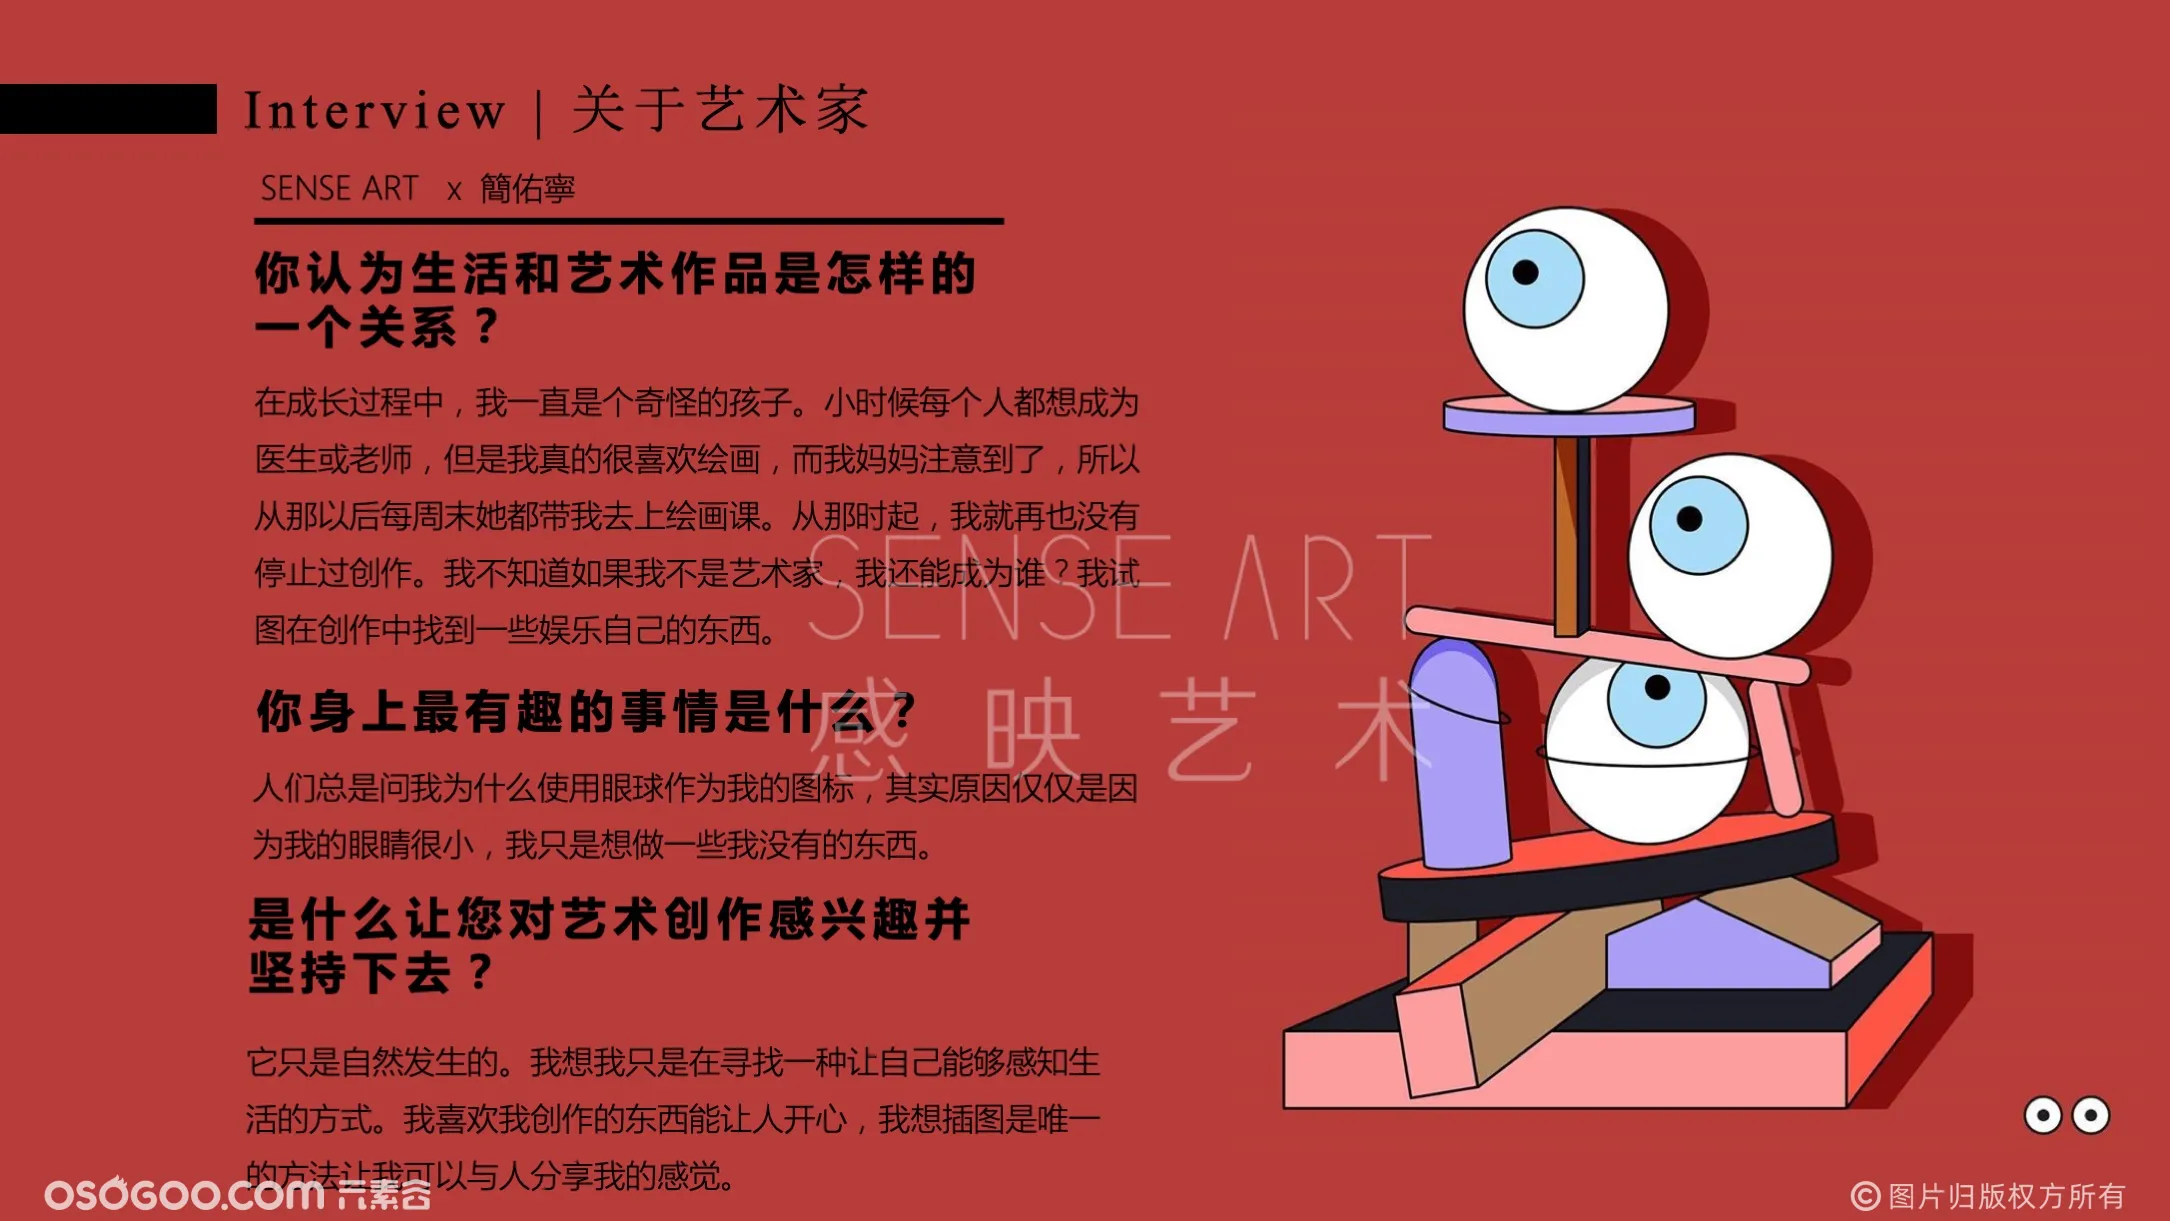 【不可思议博物馆】台湾奇趣脑洞插画艺术家主题IP美陈装置展